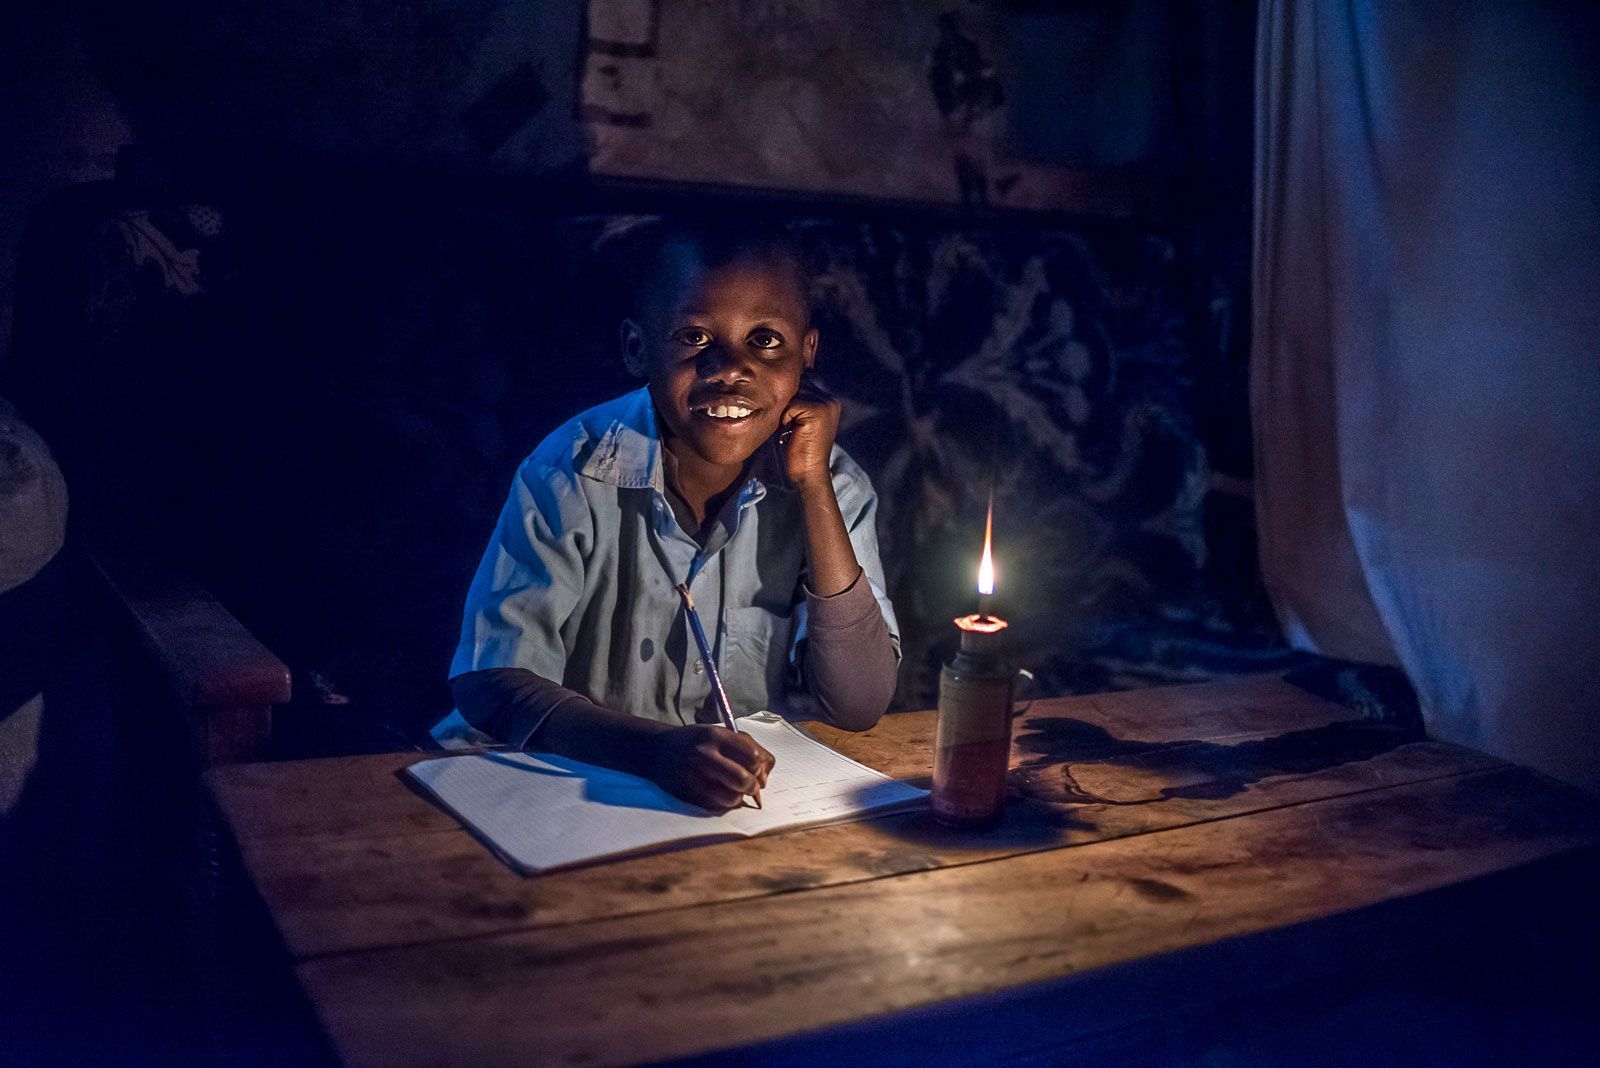 تقرير أممي: 675 مليون شخص يعيشون دون كهرباء عالمياًً